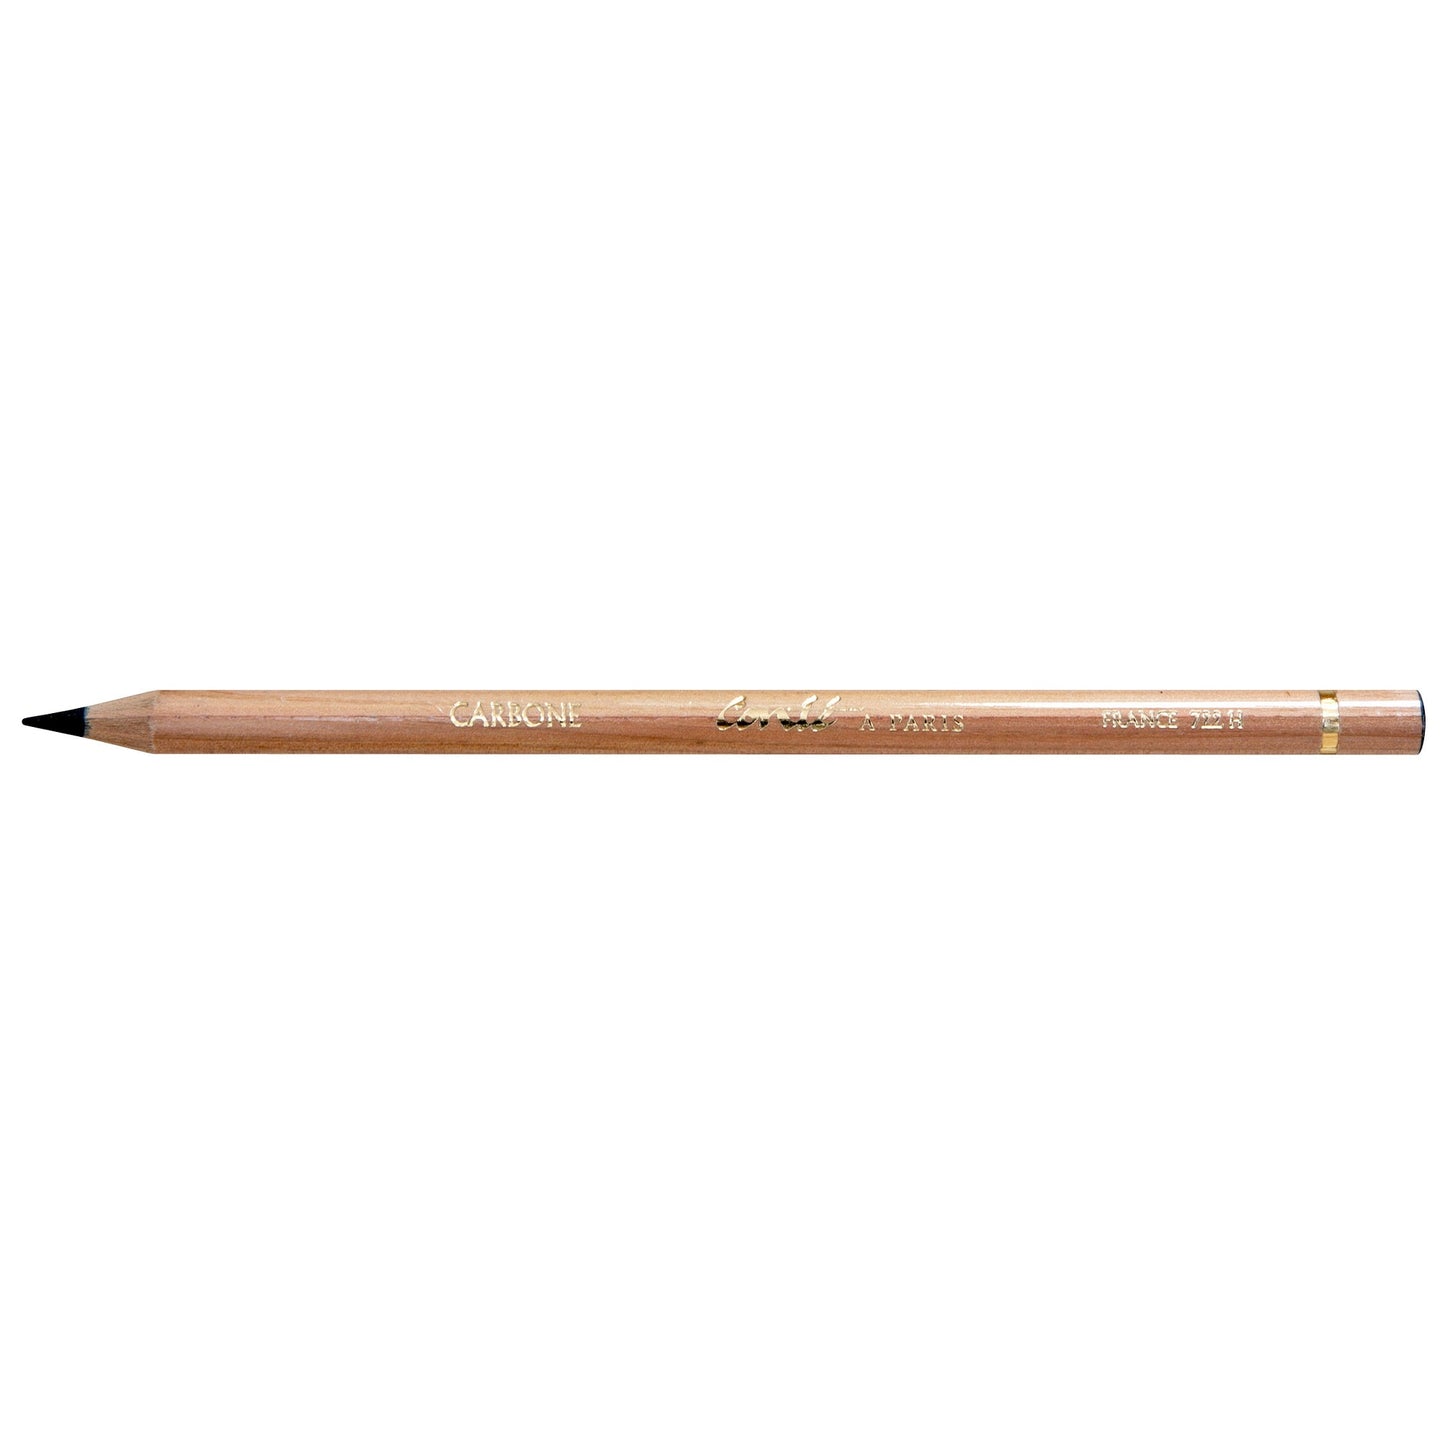 Conte Sketching Pencil Carbon 722 H - theartshop.com.au